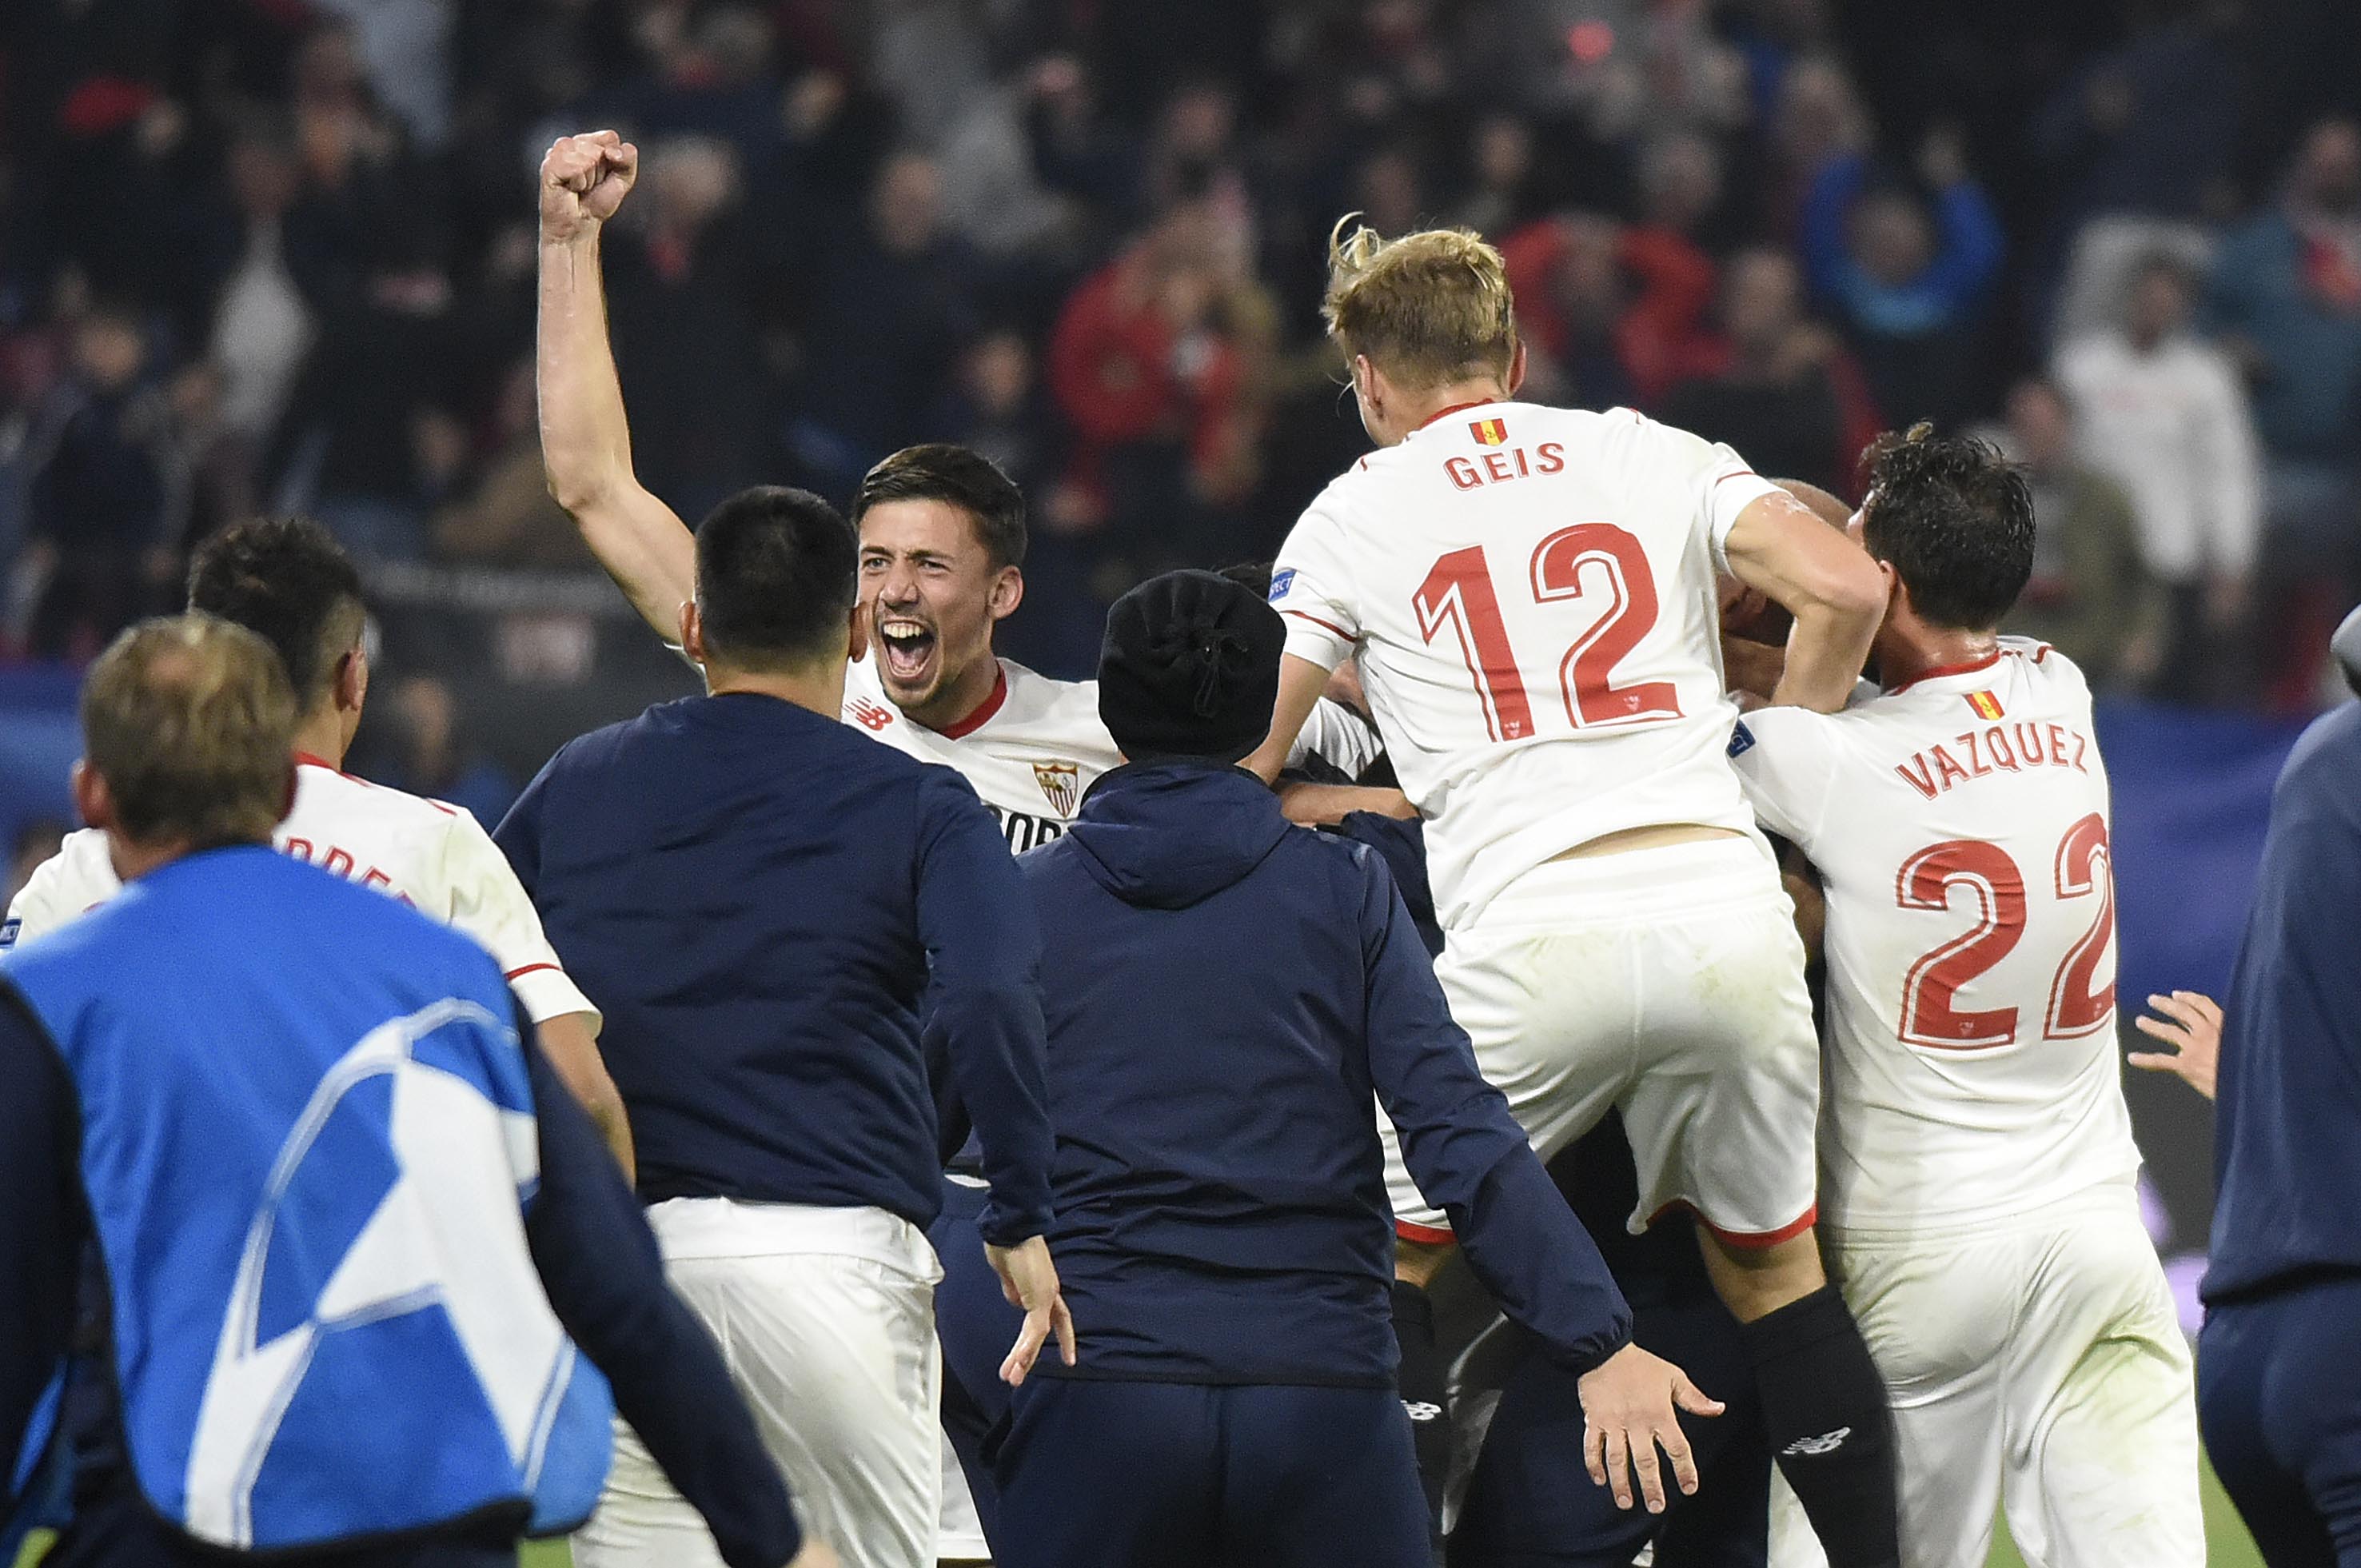 Lenglet, Geis and Vázquez celebrate a Sevilla FC Champions League goal